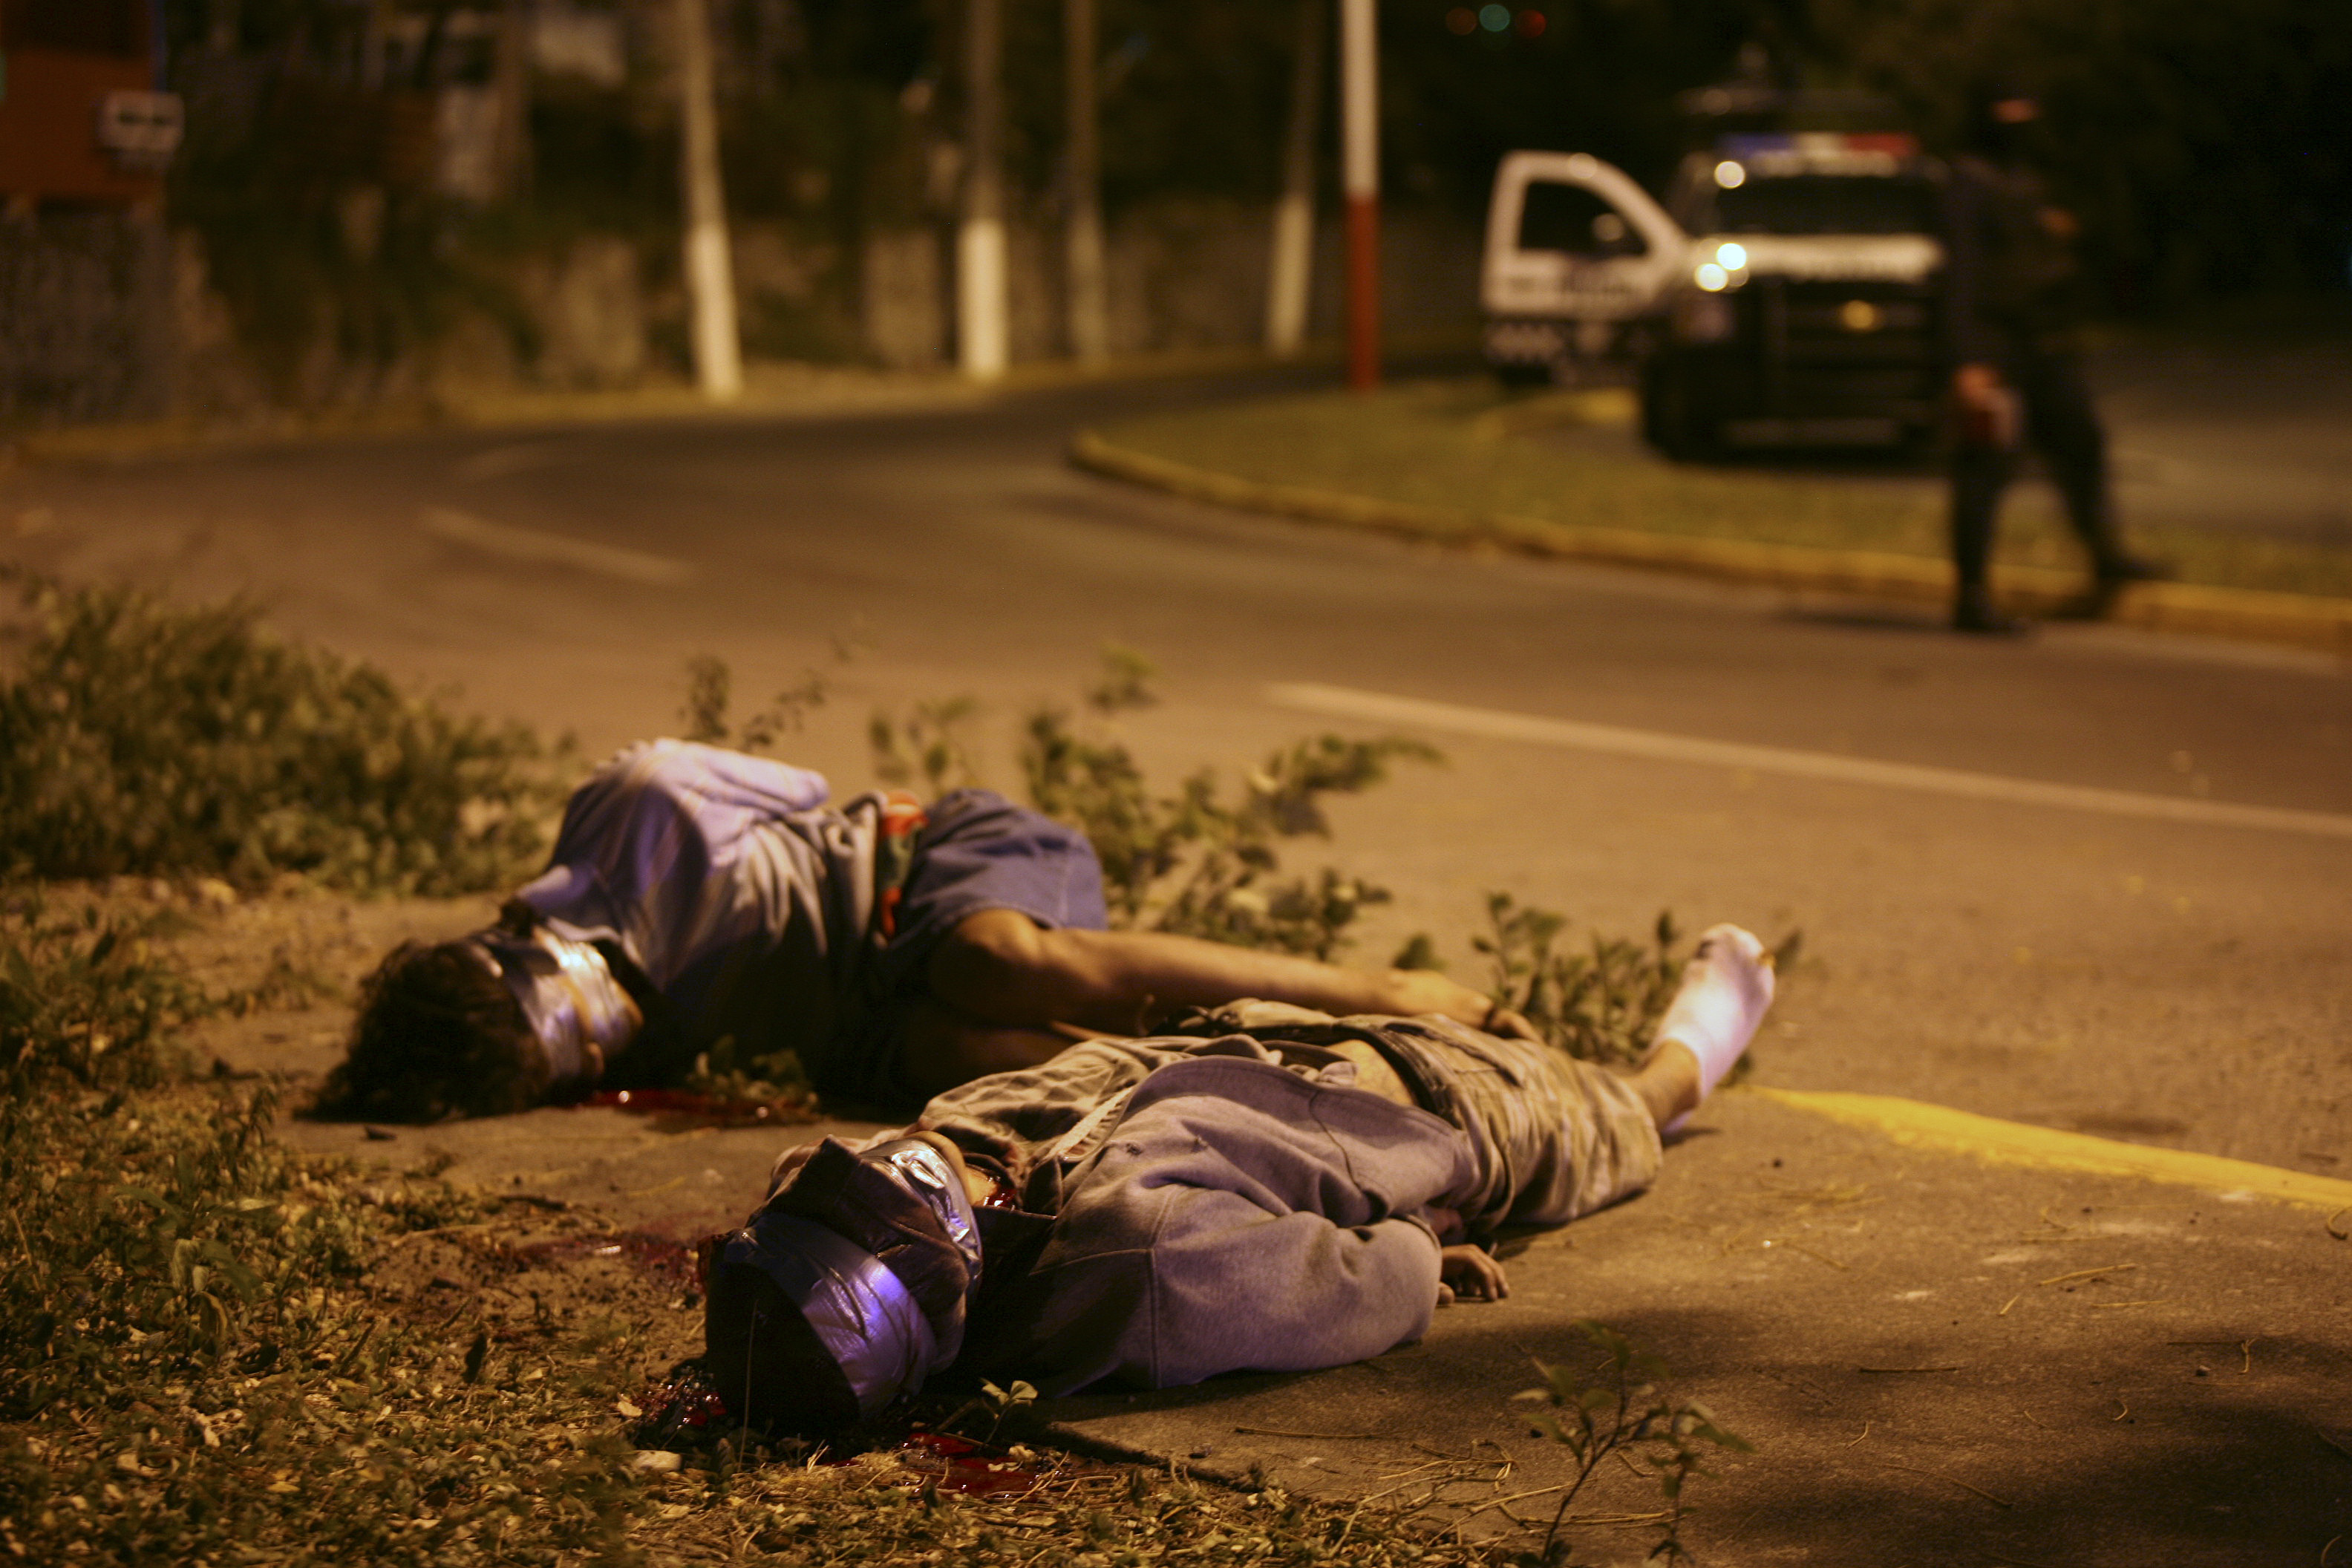 Två döda män som hittades i Veracruz i början av december, bakbundna och med tejp över huvudet.